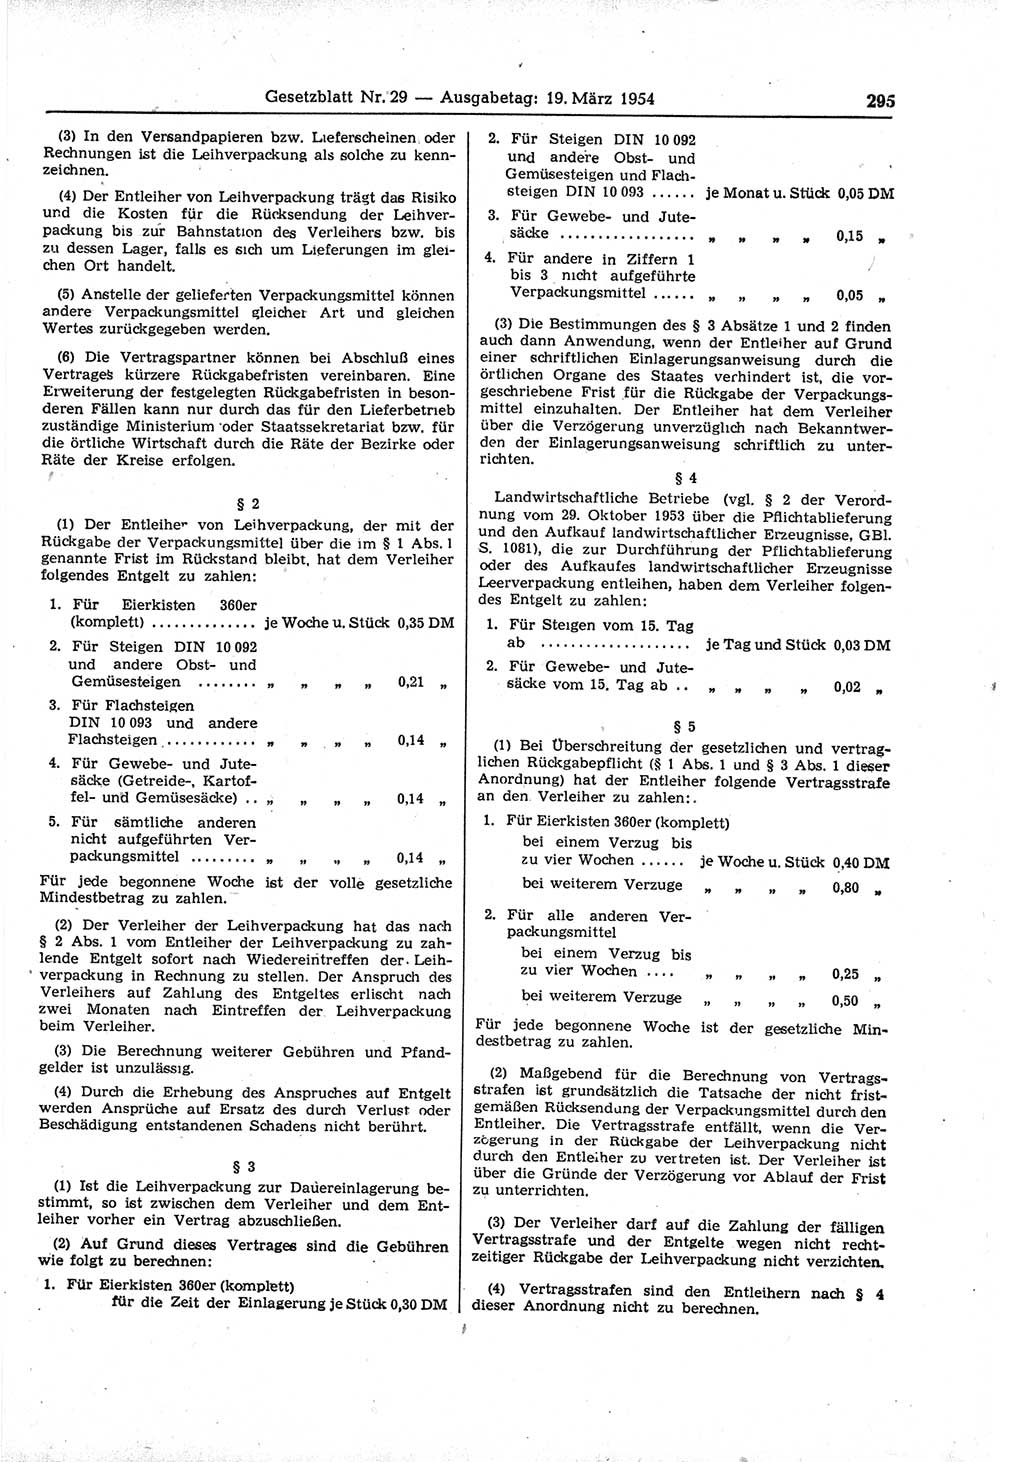 Gesetzblatt (GBl.) der Deutschen Demokratischen Republik (DDR) 1954, Seite 295 (GBl. DDR 1954, S. 295)